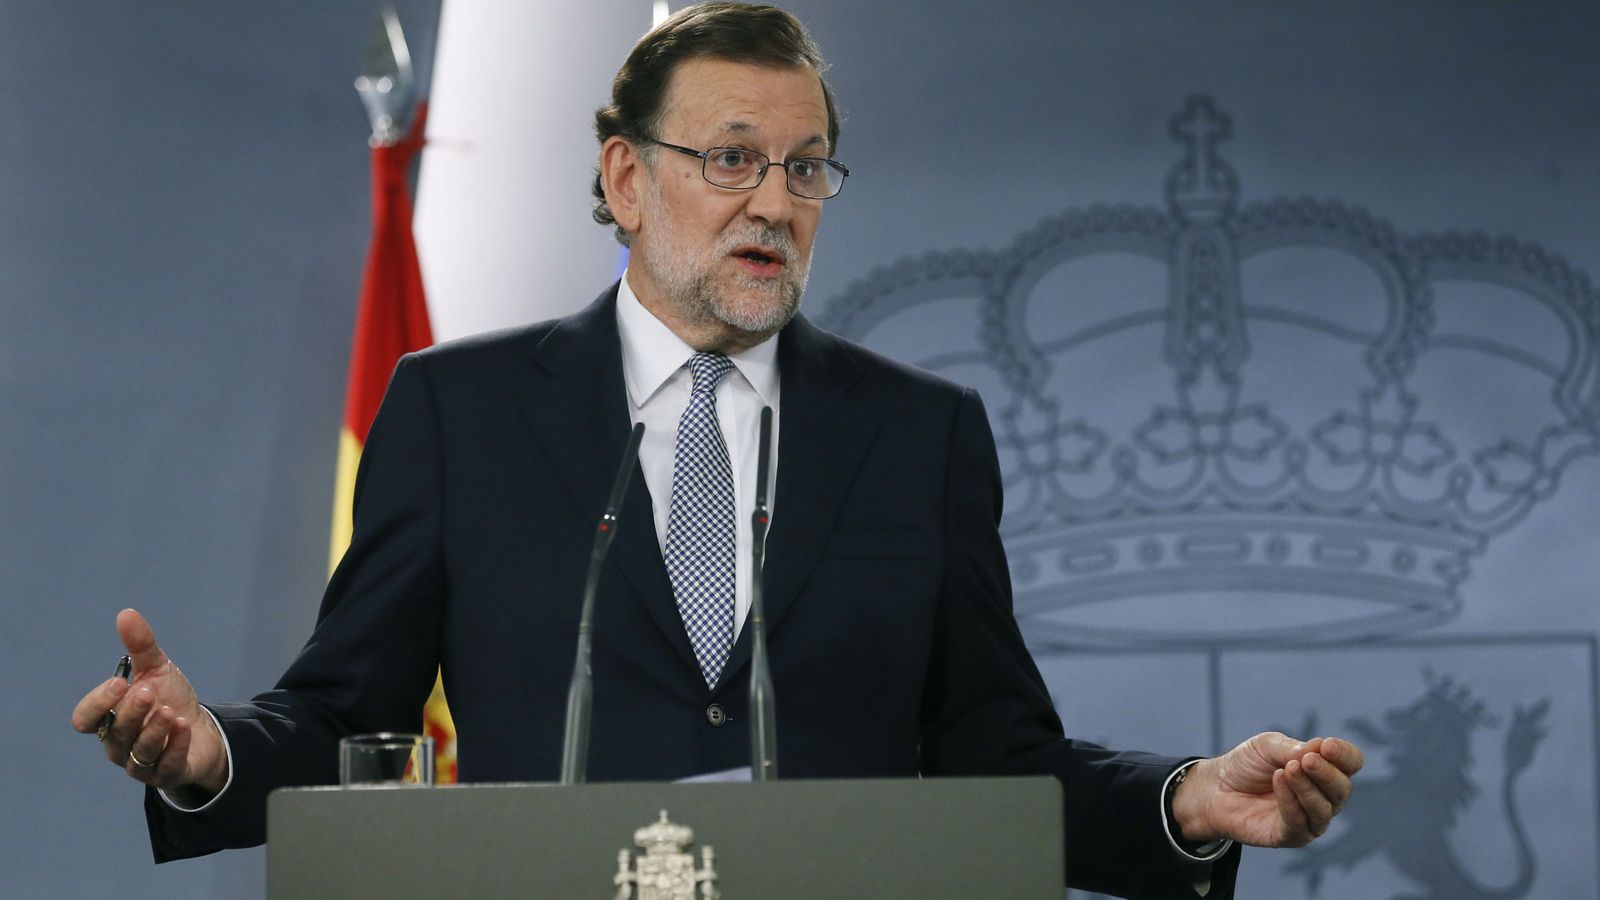 Foto: El presidente del Gobierno en funciones, Mariano Rajoy, durante una rueda de prensaen el Palacio de la Moncloa. (Efe) 